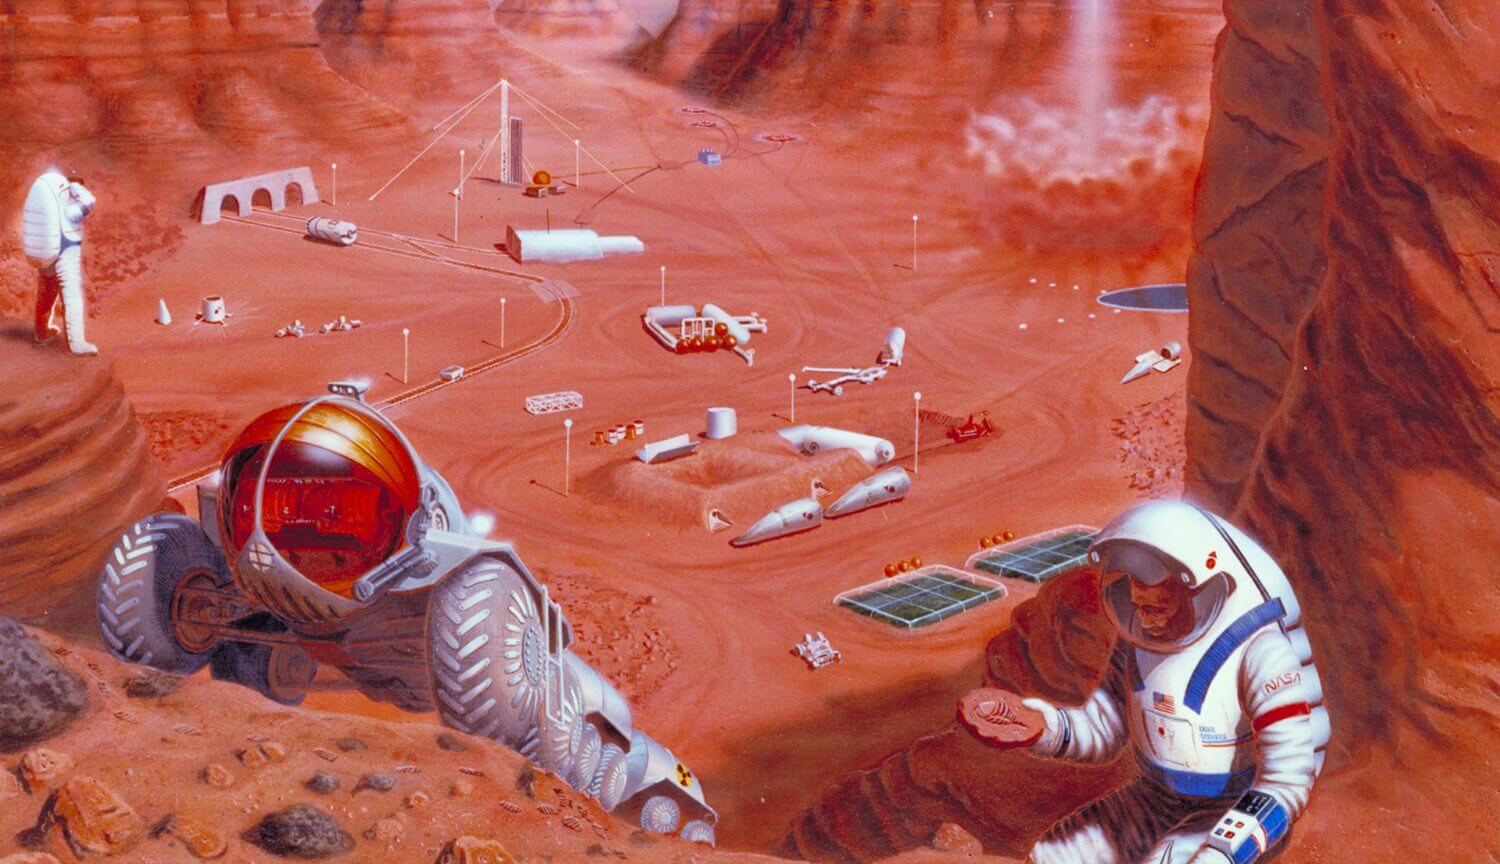 कर सकते हैं रोगाणुओं करने के लिए खनन मंगल ग्रह पर?